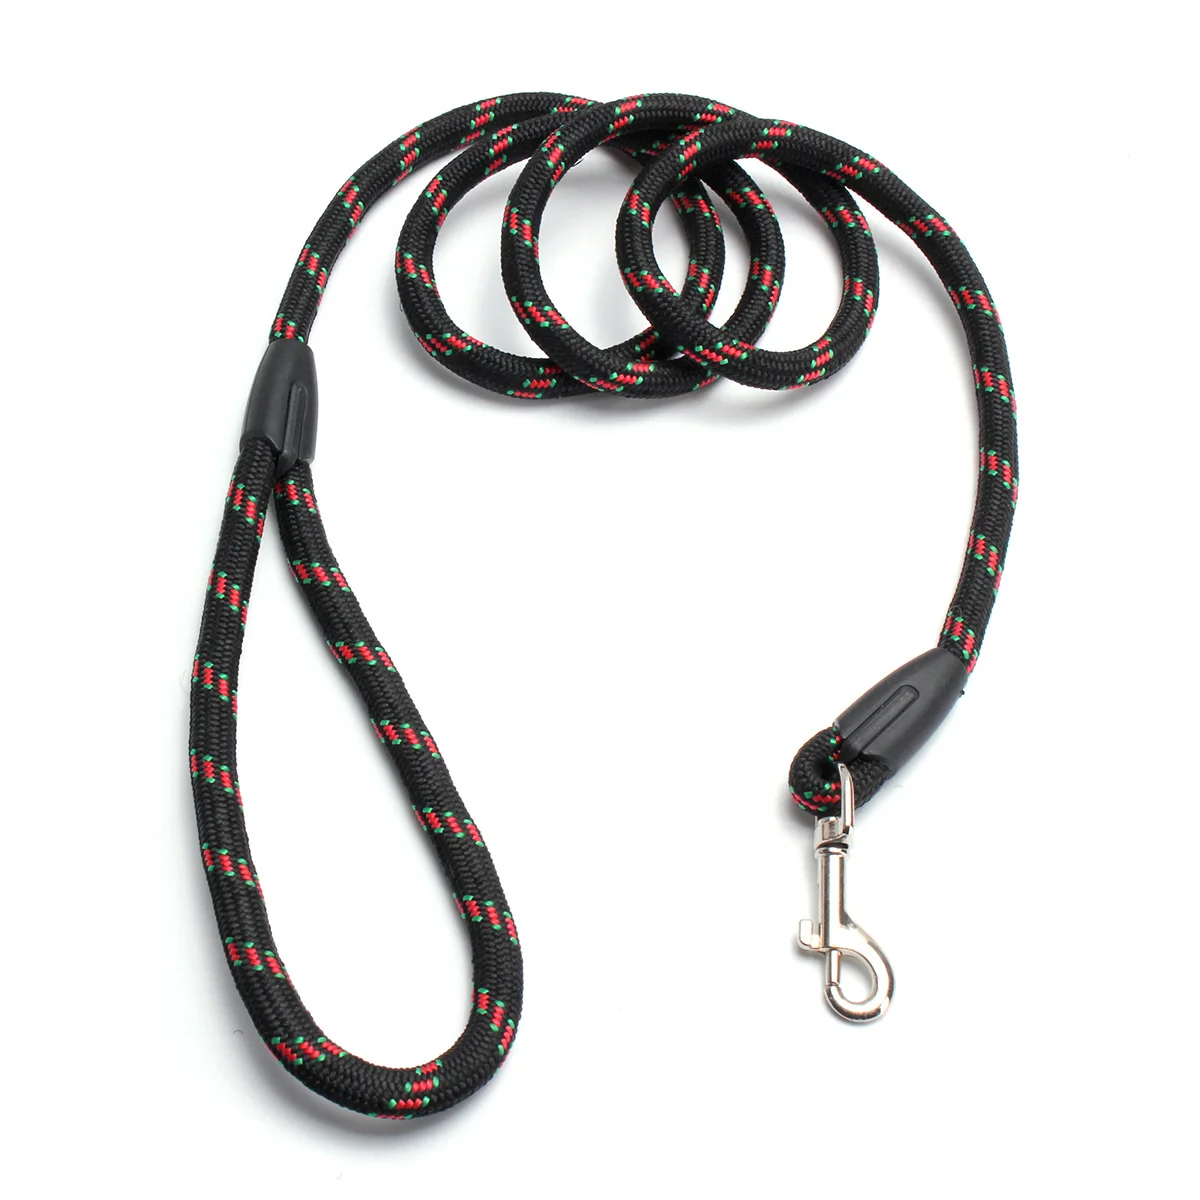 Поводок для собак, крепкий нейлоновый поводок длиной 120 см, 3 цвета, безопасный поводок для прогулок, тренировочный поводок для маленьких и больших собак, прочный поводок - Цвет: Черный